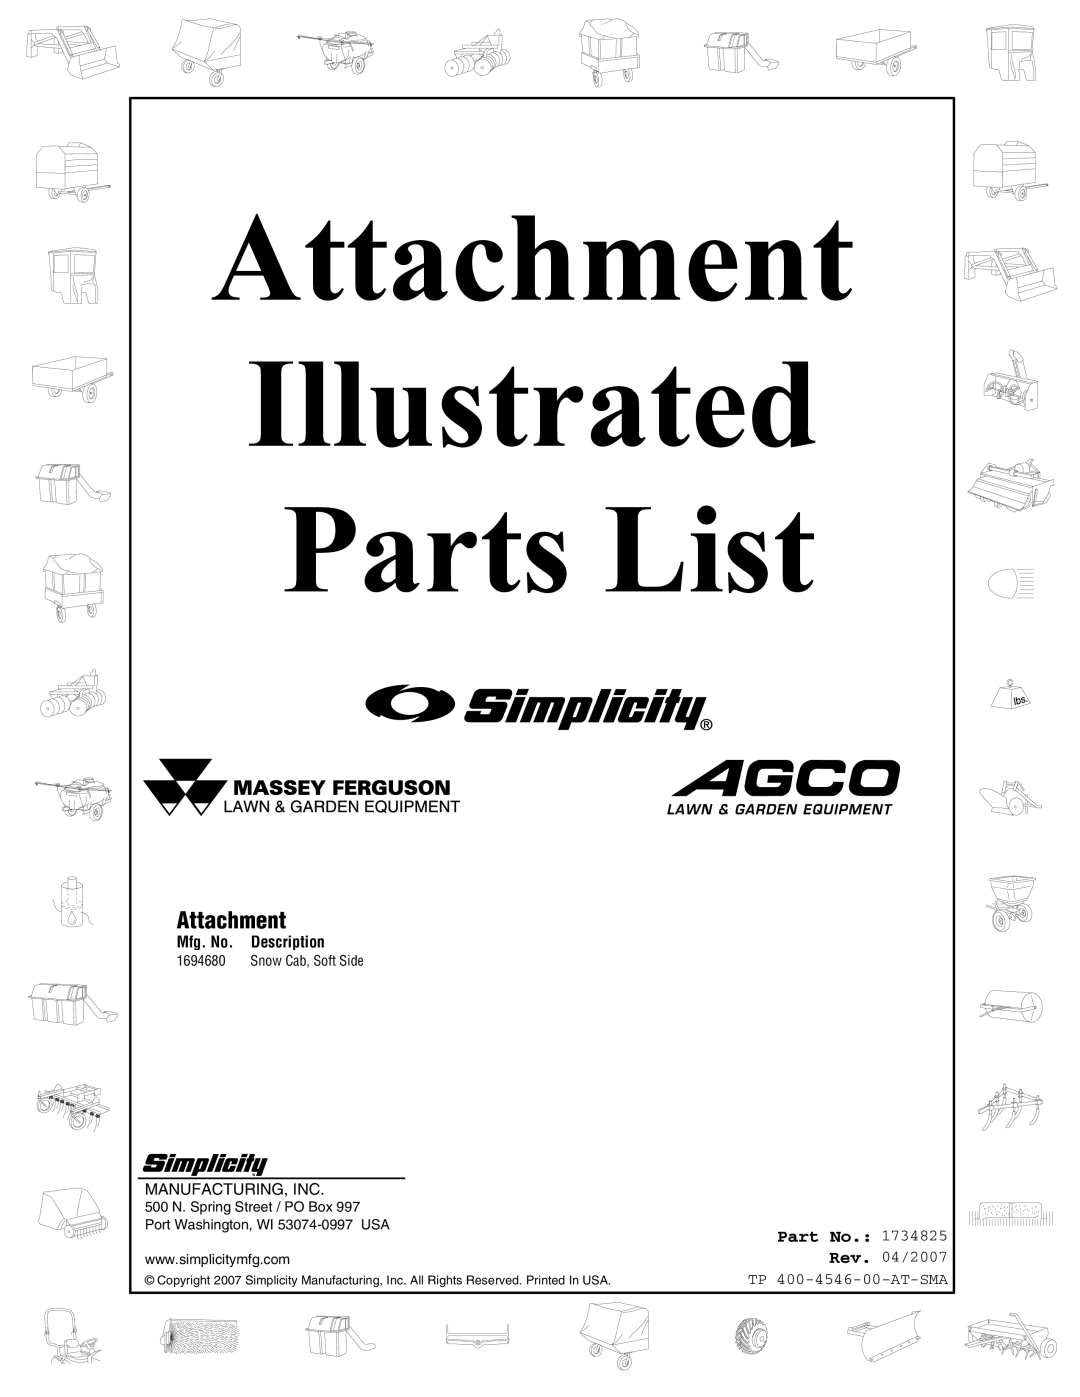 Snapper 4546 manual Attachment, Part No, Mfg. No. Description, Illustrated, Parts List, Rev. 04/2007 